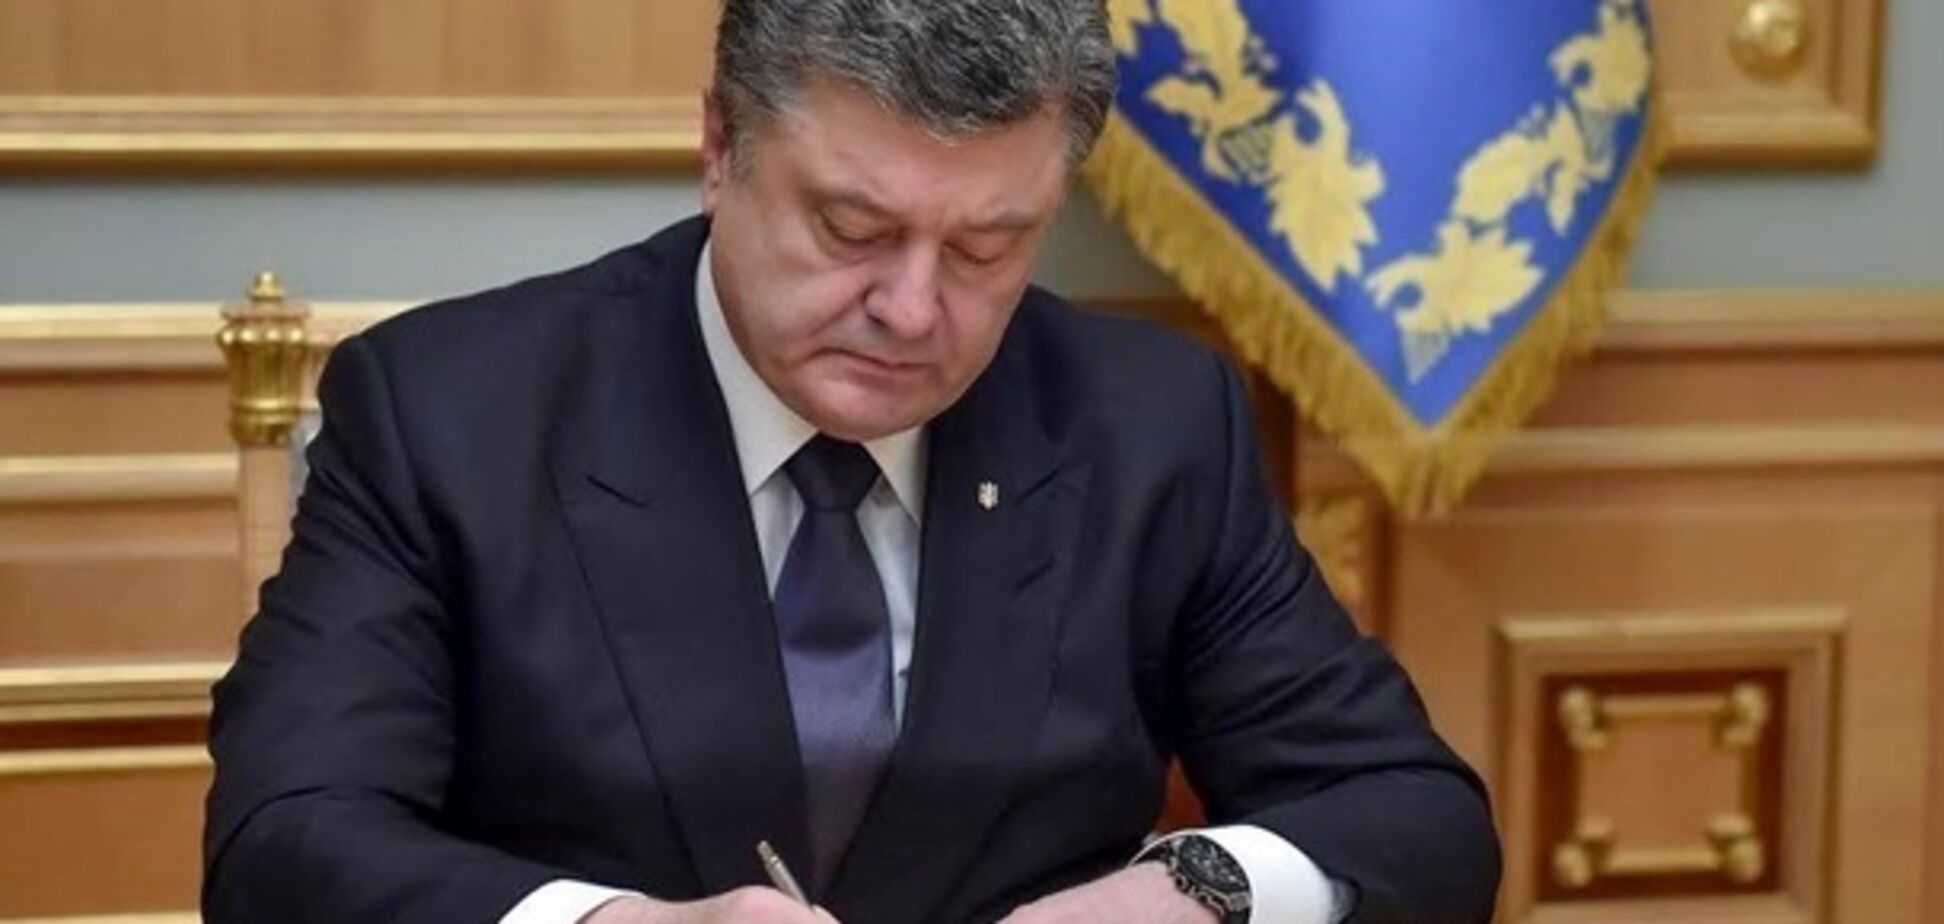 Воєнний стан в Україні: опубліковано остаточний указ Порошенка з датами